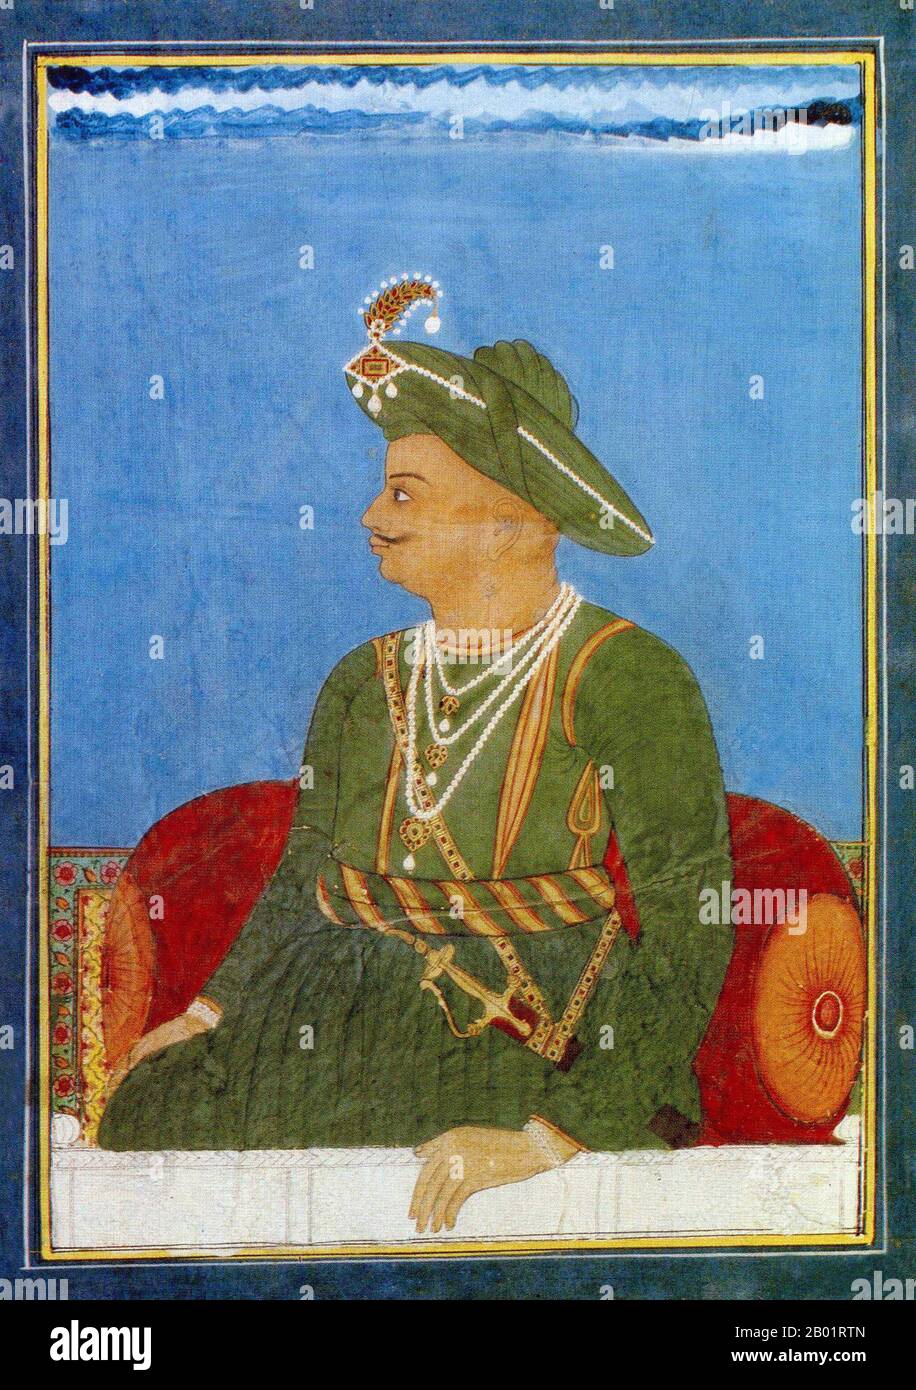 India: Tipu Sultan (novembre 1750 - 4 maggio 1799), sovrano del Regno di Mysore (r. 1782-1799). Acquerello, c. 1790. Tipu Sultan, noto anche come Tigre di Mysore, fu de facto sovrano del Regno di Mysore. Era figlio di Hyder Ali, a quel tempo ufficiale dell'esercito di Mysore prima della sua ascesa al potere, e della sua seconda moglie, Fatima o Fakhr-un-Nissa. Gli fu dato un certo numero di titoli onorifici, e fu indicato come sultano Fateh Ali Khan Shahab, Tipu Saheb, Bahadur Khan Tipu Sultan o Fatih Ali Khan Tipu Sultan Bahadur. Foto Stock